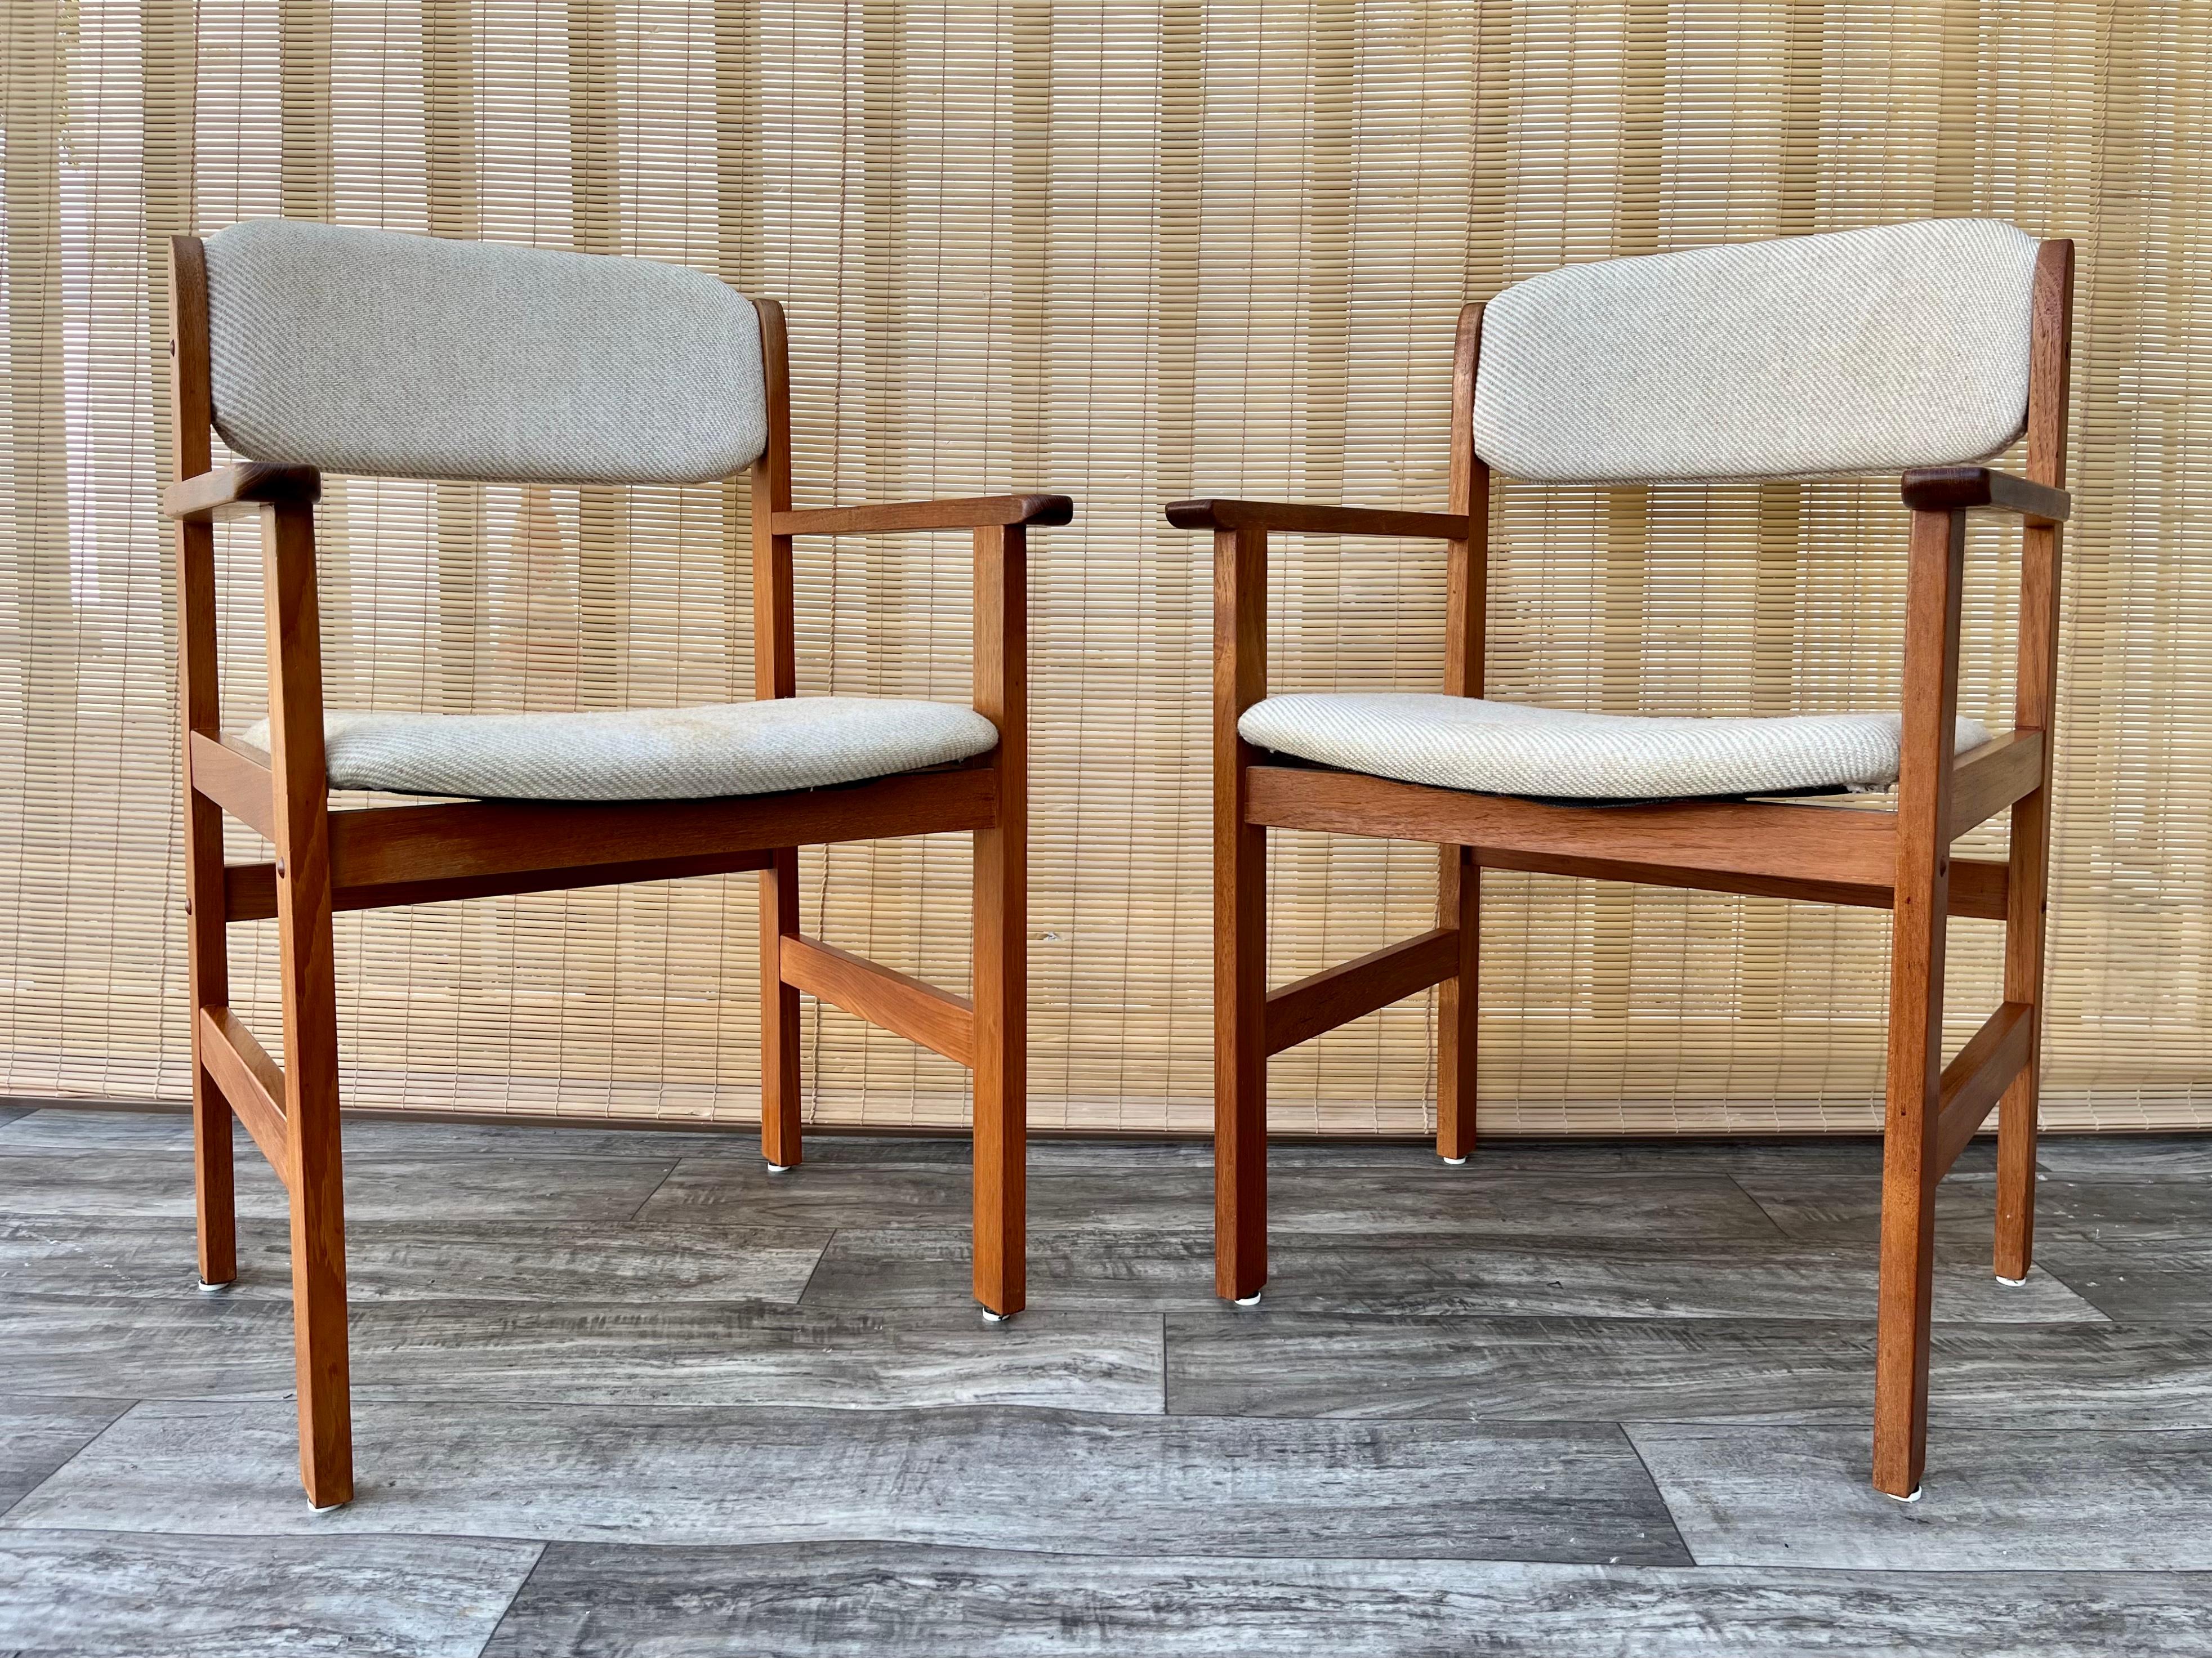 Paire de chaises capitaines de style moderne danois du milieu du siècle dernier des années 1980 par Benny Linden Design. 
Il est composé d'un cadre en teck massif au Design Modern Scandinavian minimaliste et d'une assise et d'un dossier rembourrés